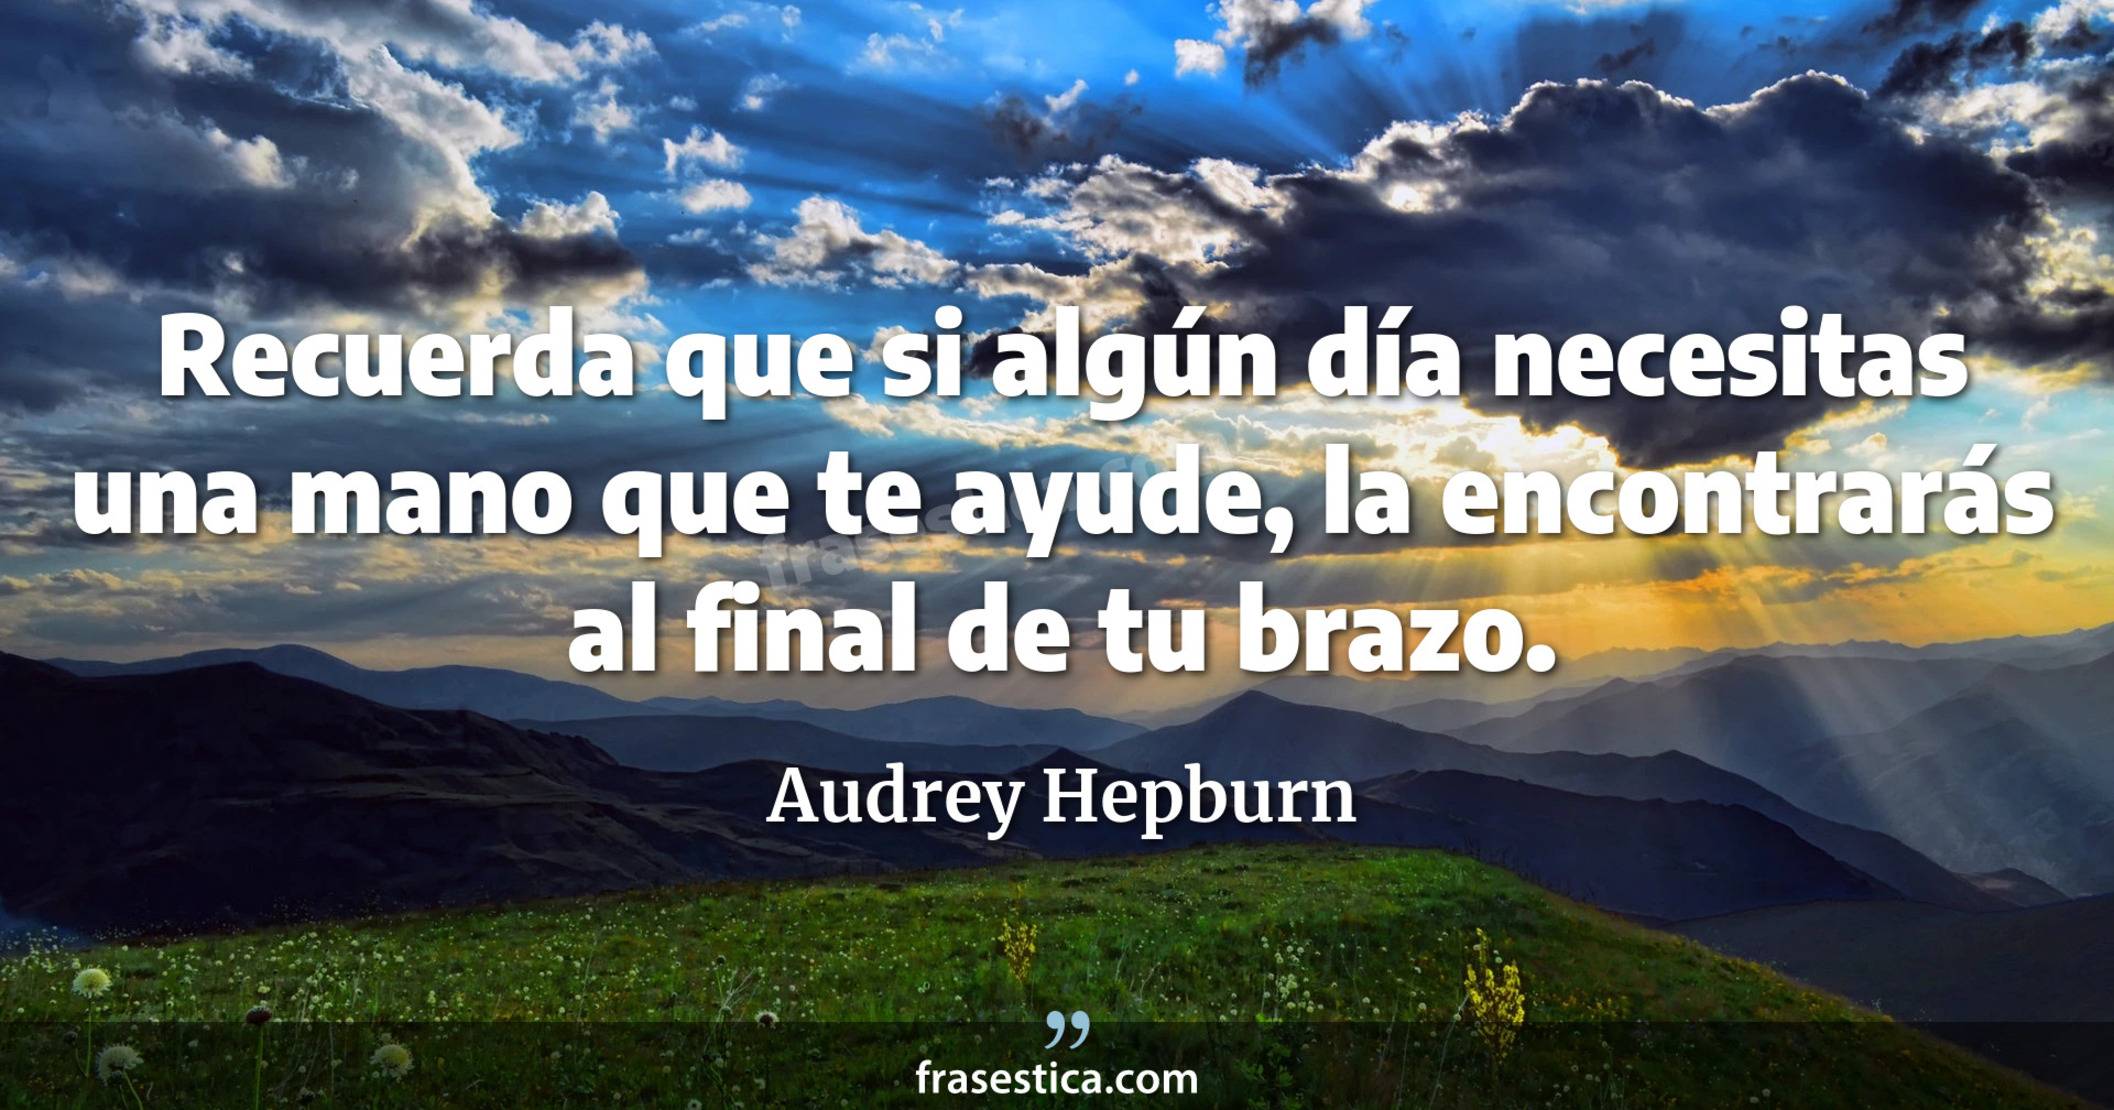 Recuerda que si algún día necesitas una mano que te ayude, la encontrarás al final de tu brazo. - Audrey Hepburn